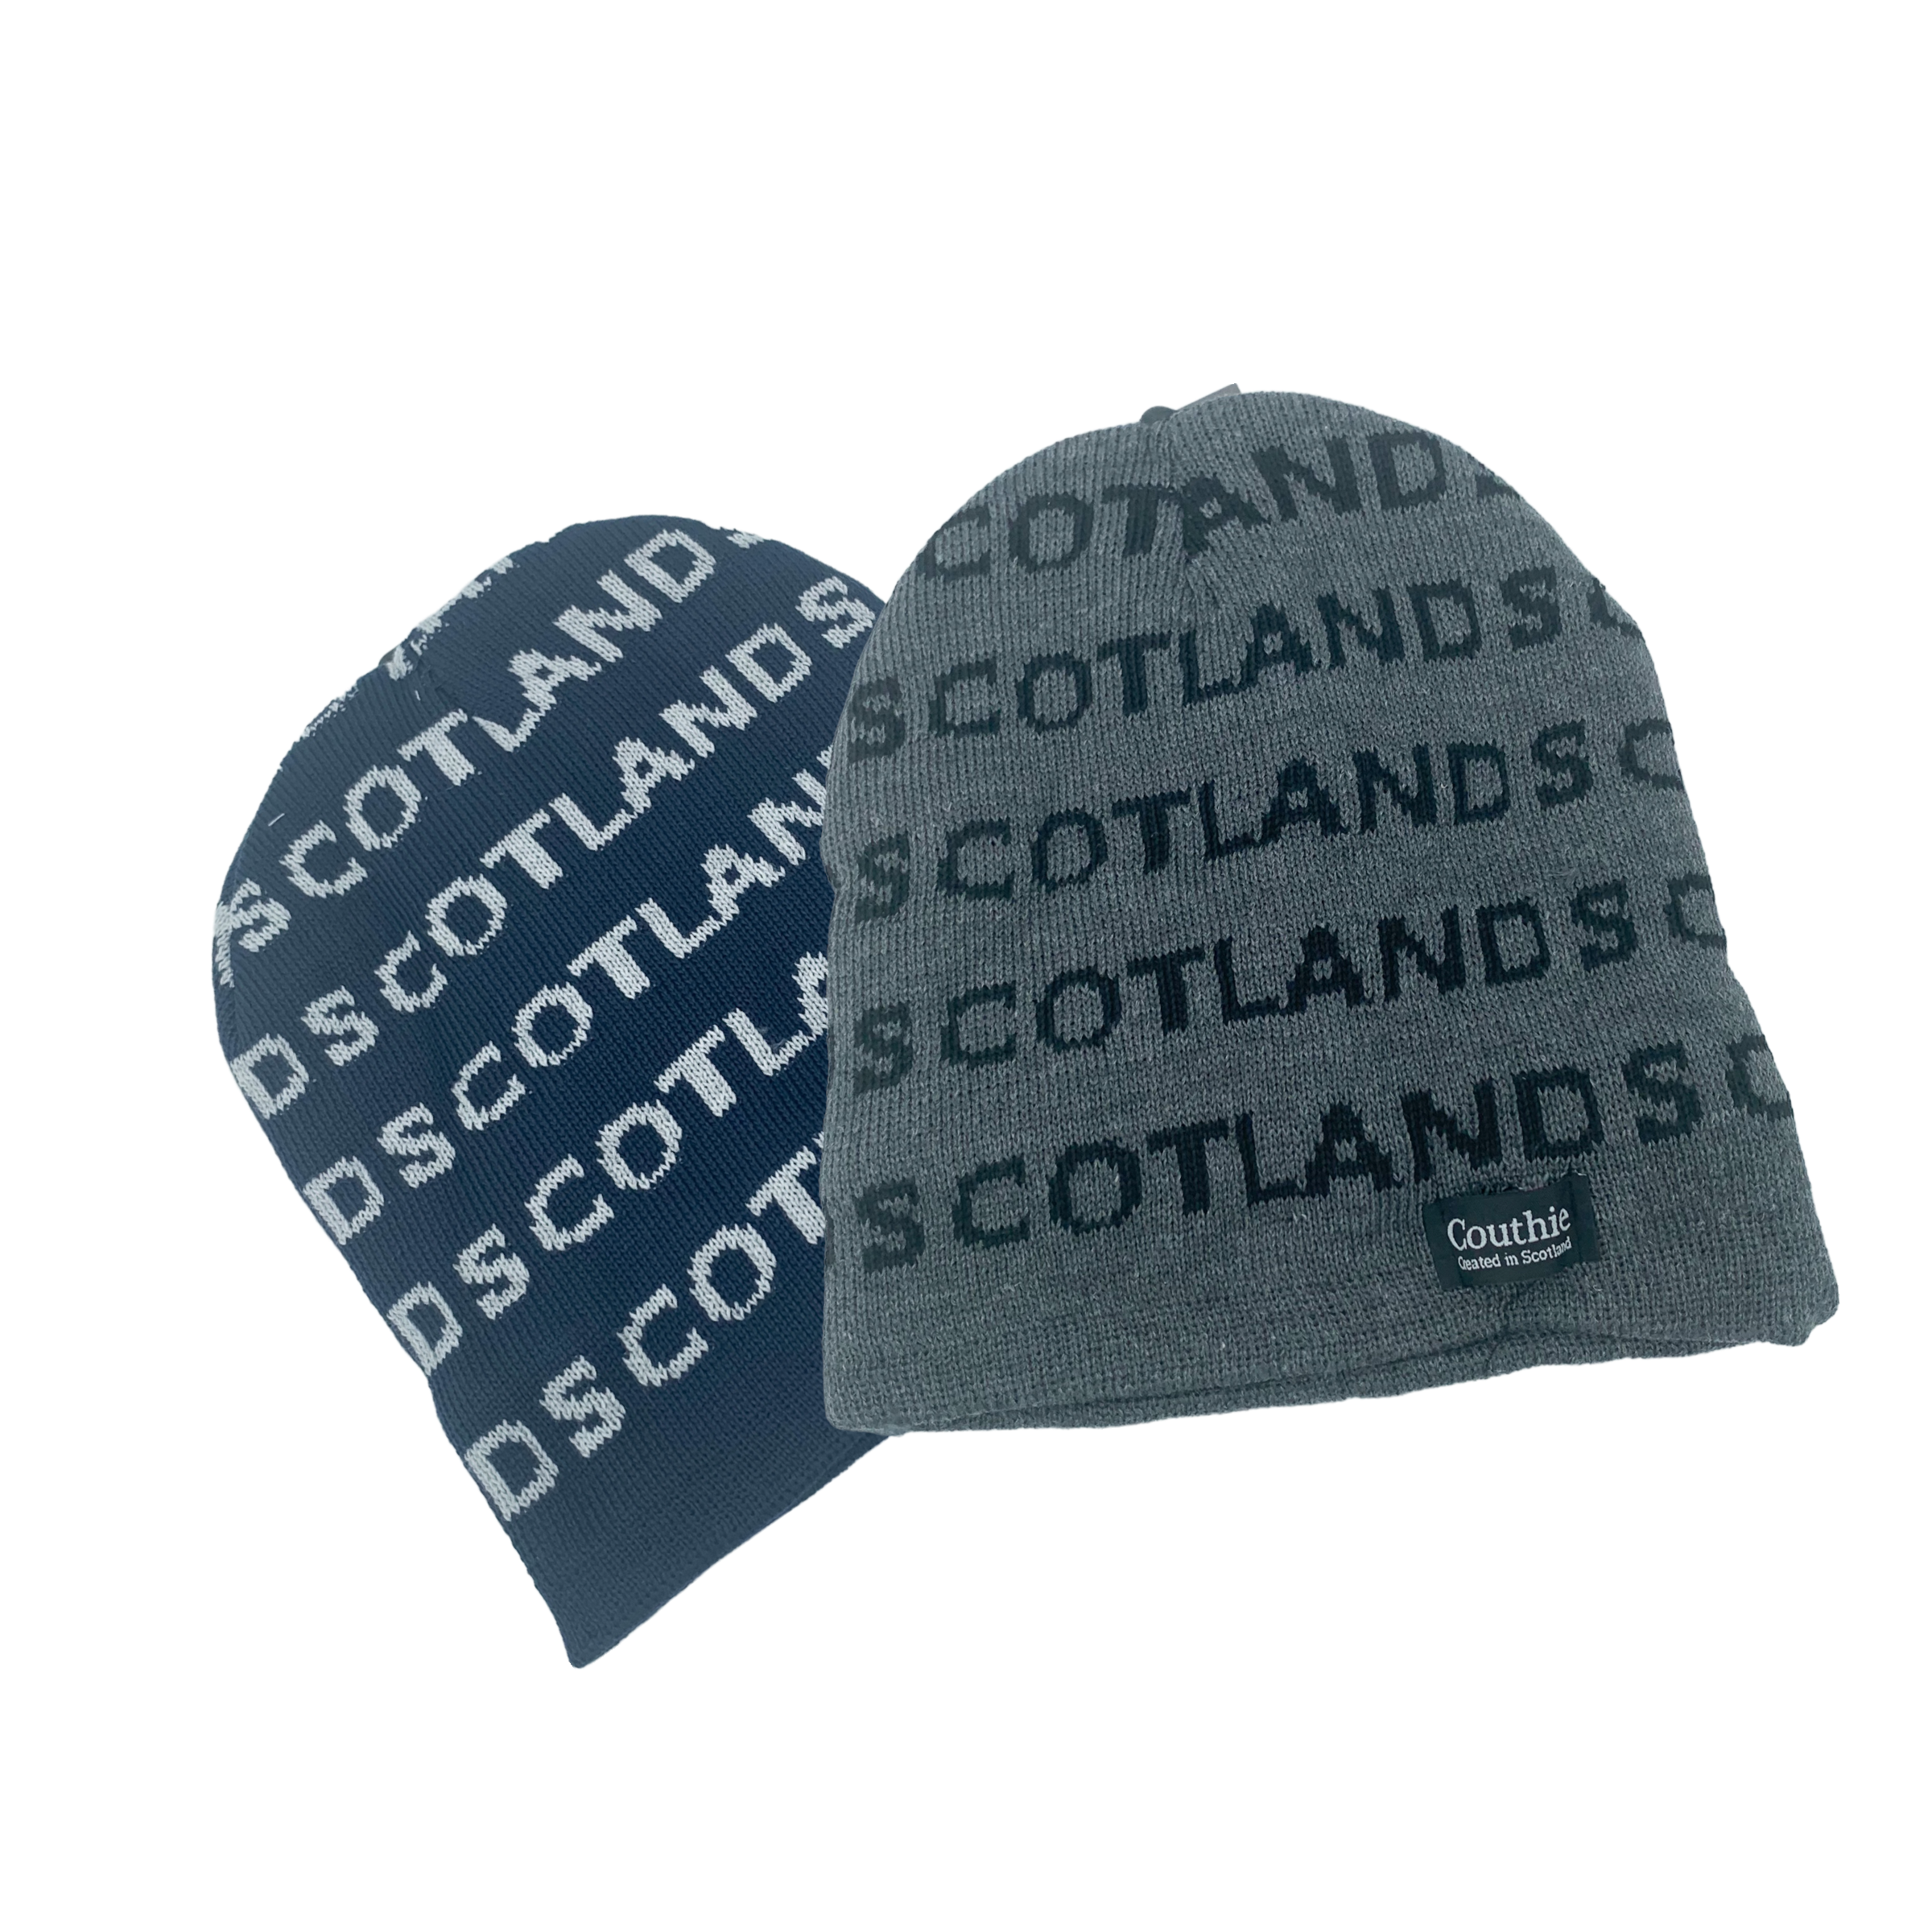 Scotland Beanies - fleece lined